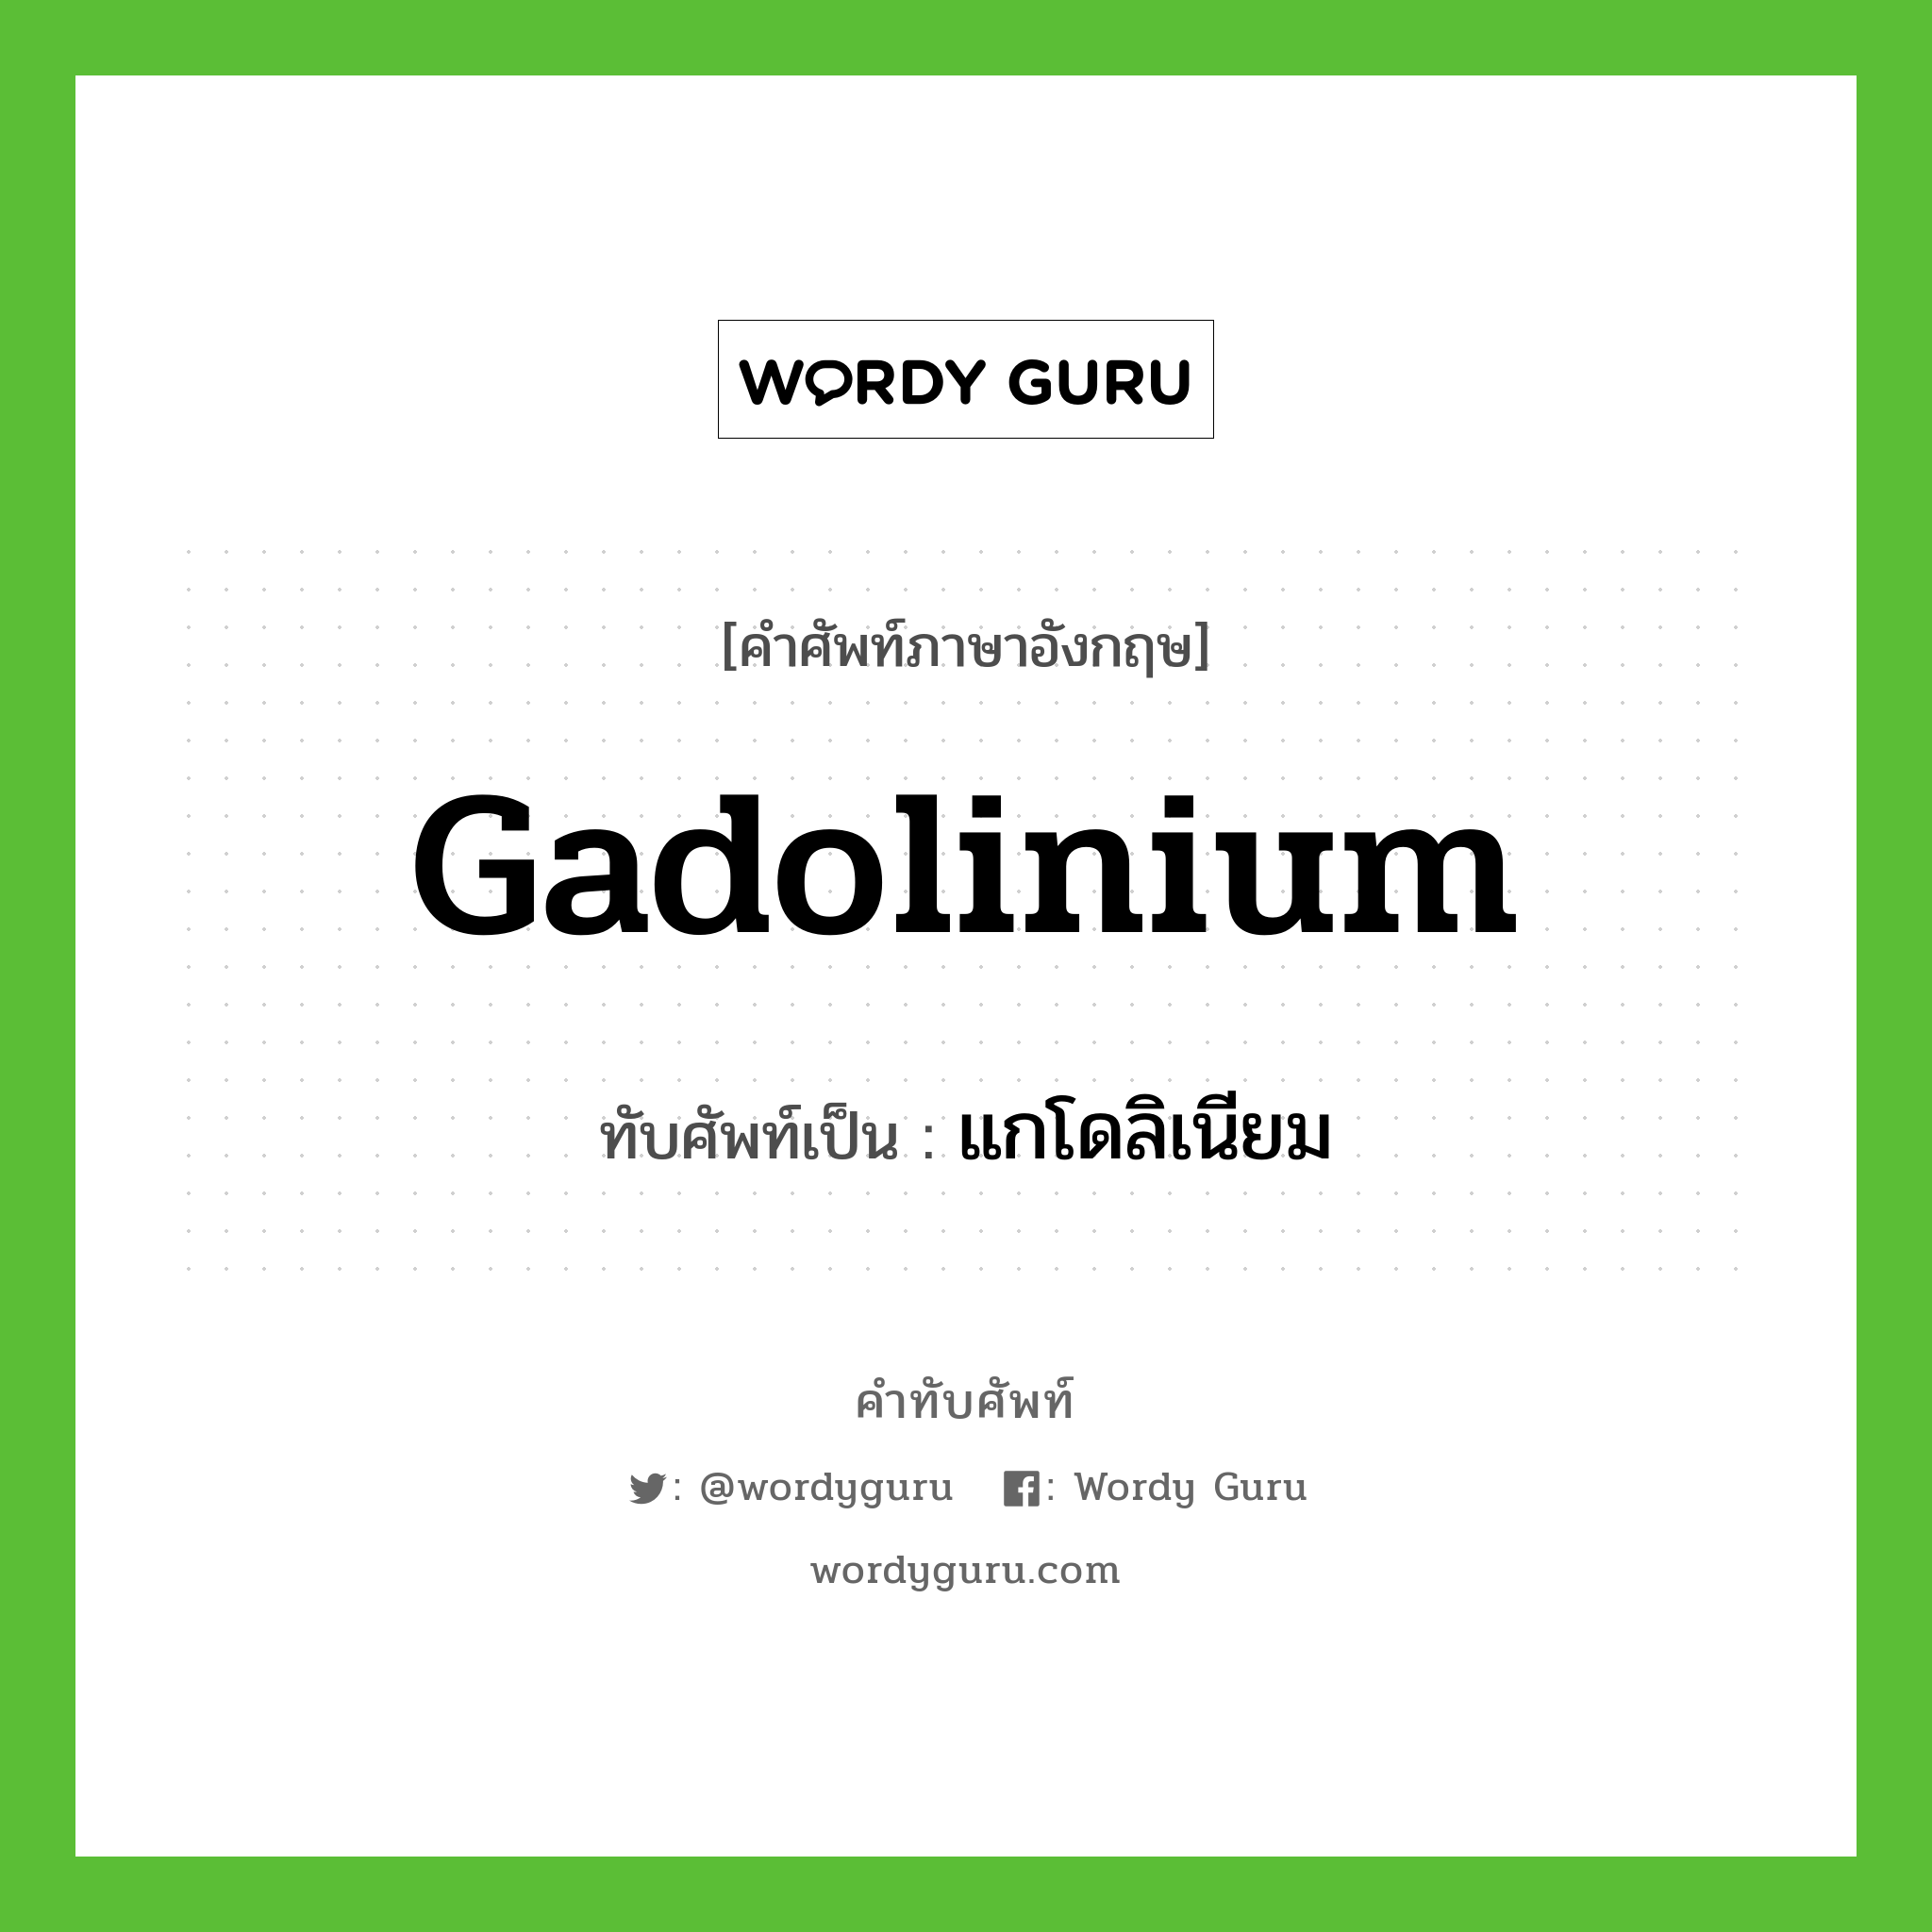 gadolinium เขียนเป็นคำไทยว่าอะไร?, คำศัพท์ภาษาอังกฤษ gadolinium ทับศัพท์เป็น แกโดลิเนียม